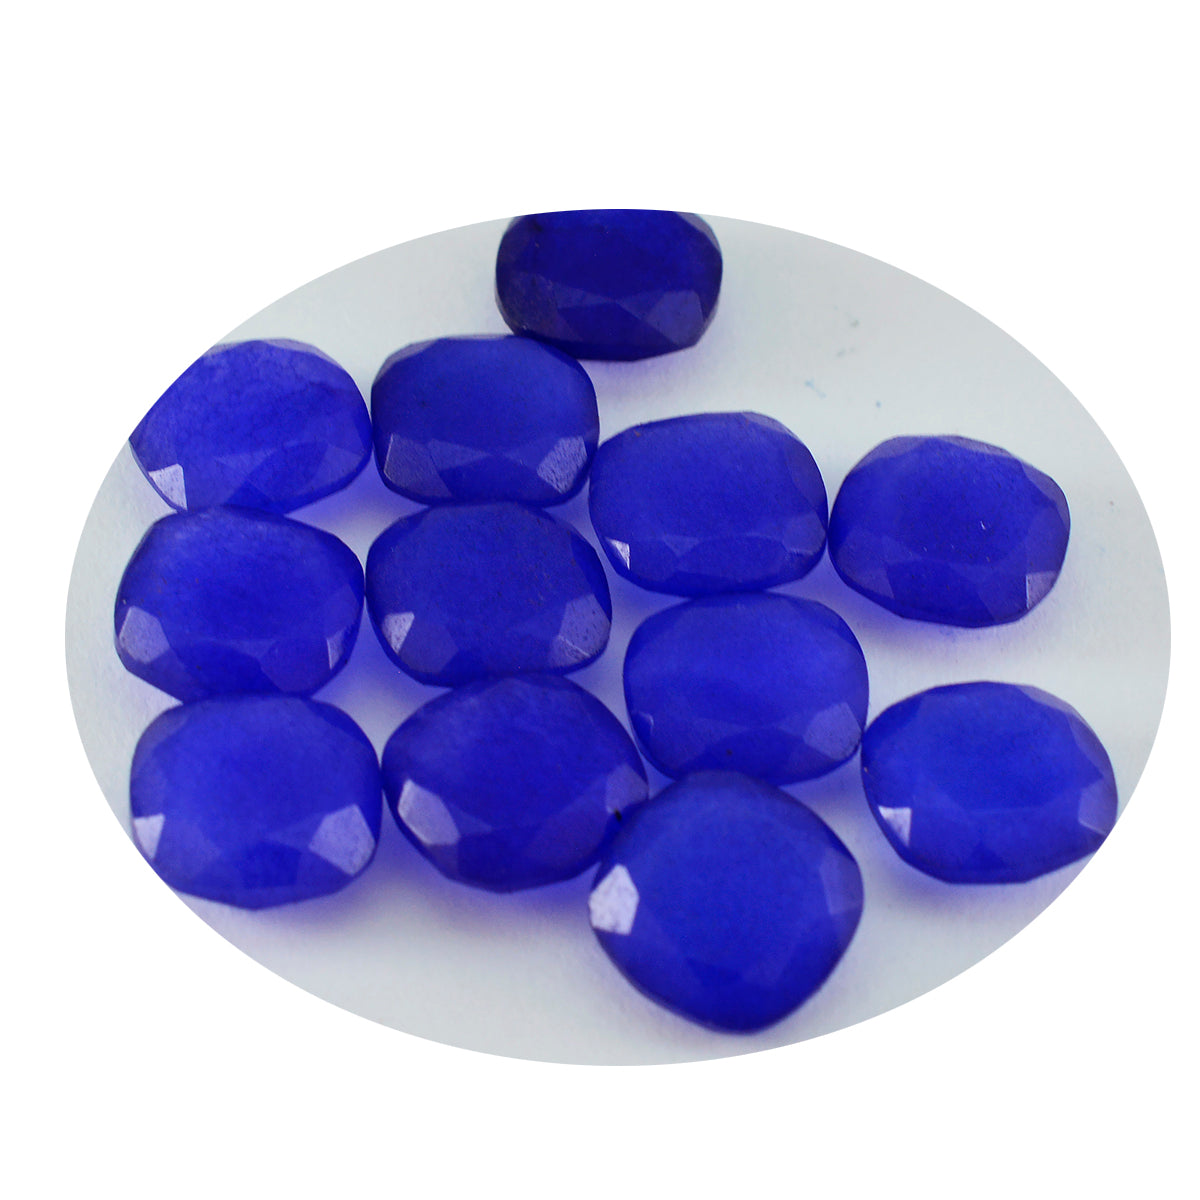 riyogems 1 шт., натуральная синяя яшма, граненая 7x7 мм, форма подушки, качество, свободный драгоценный камень